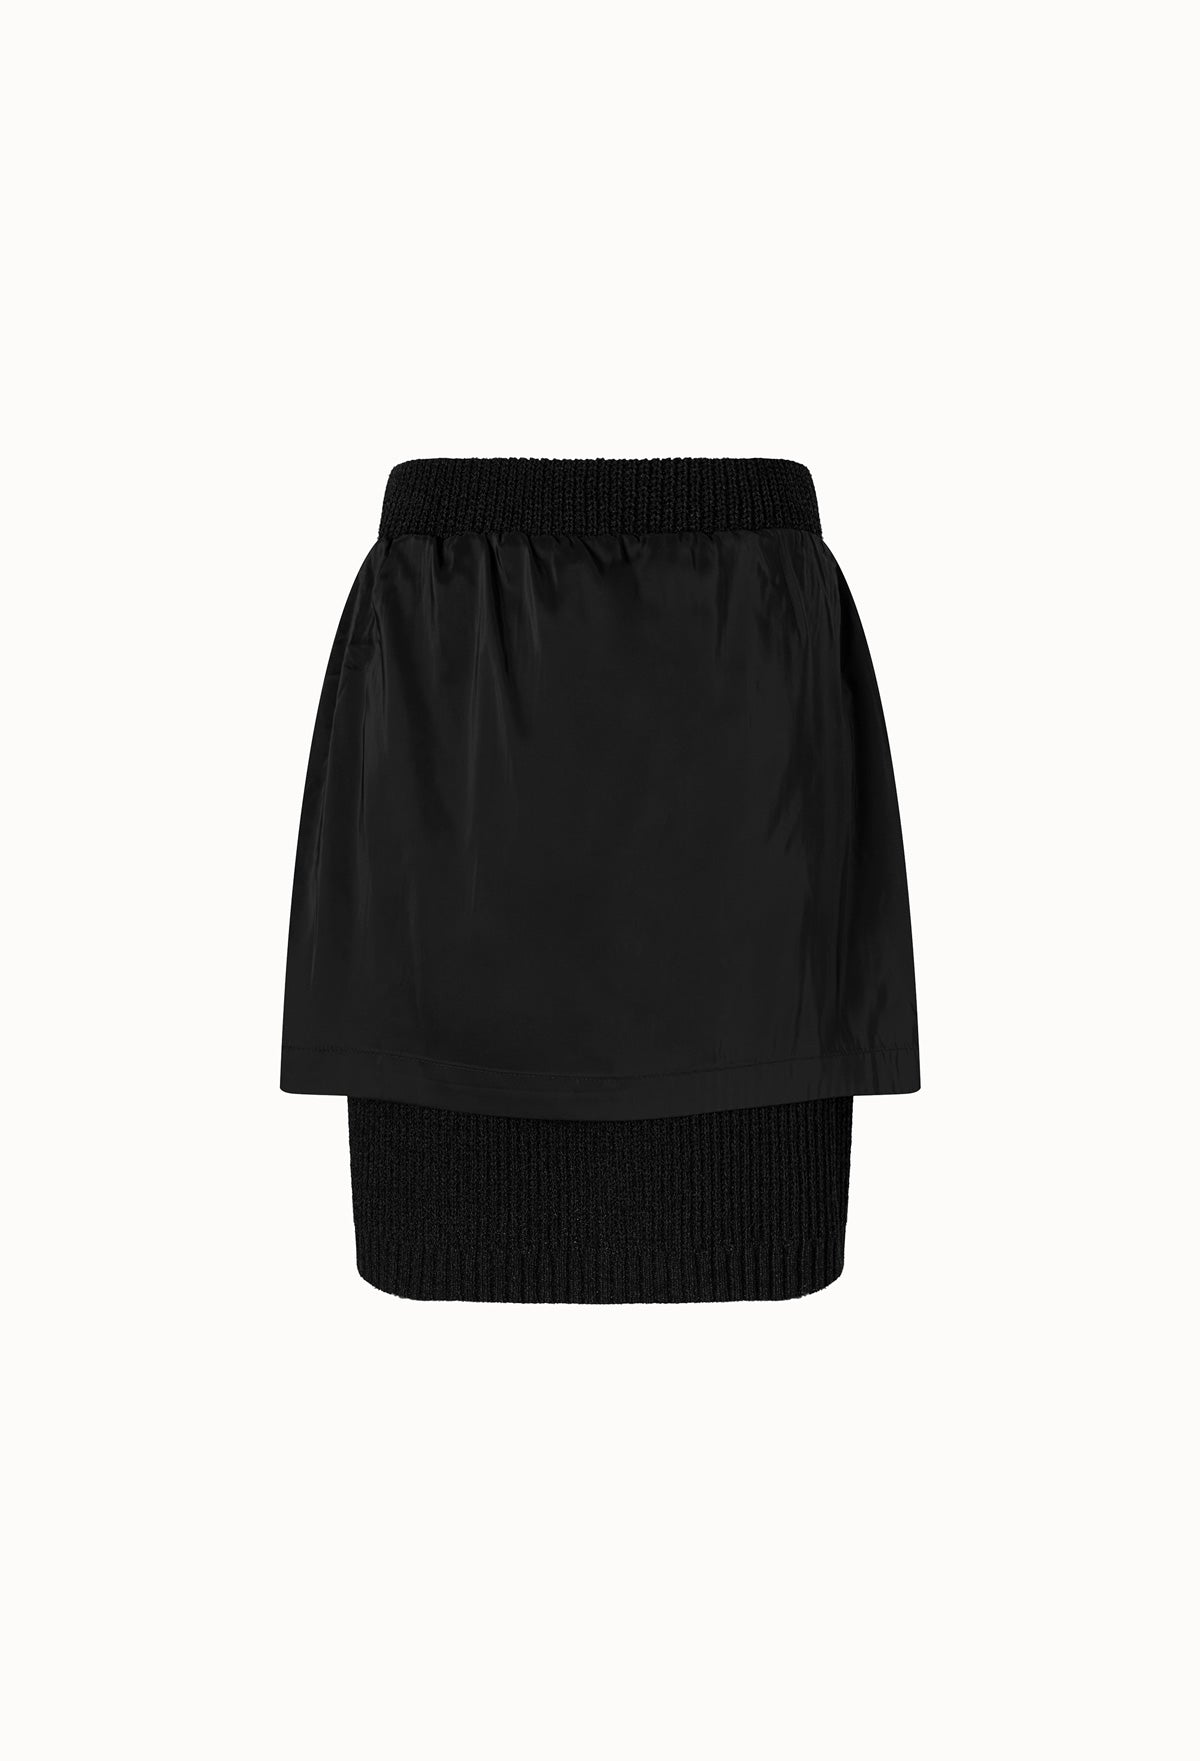 黑色混色針織半身裙